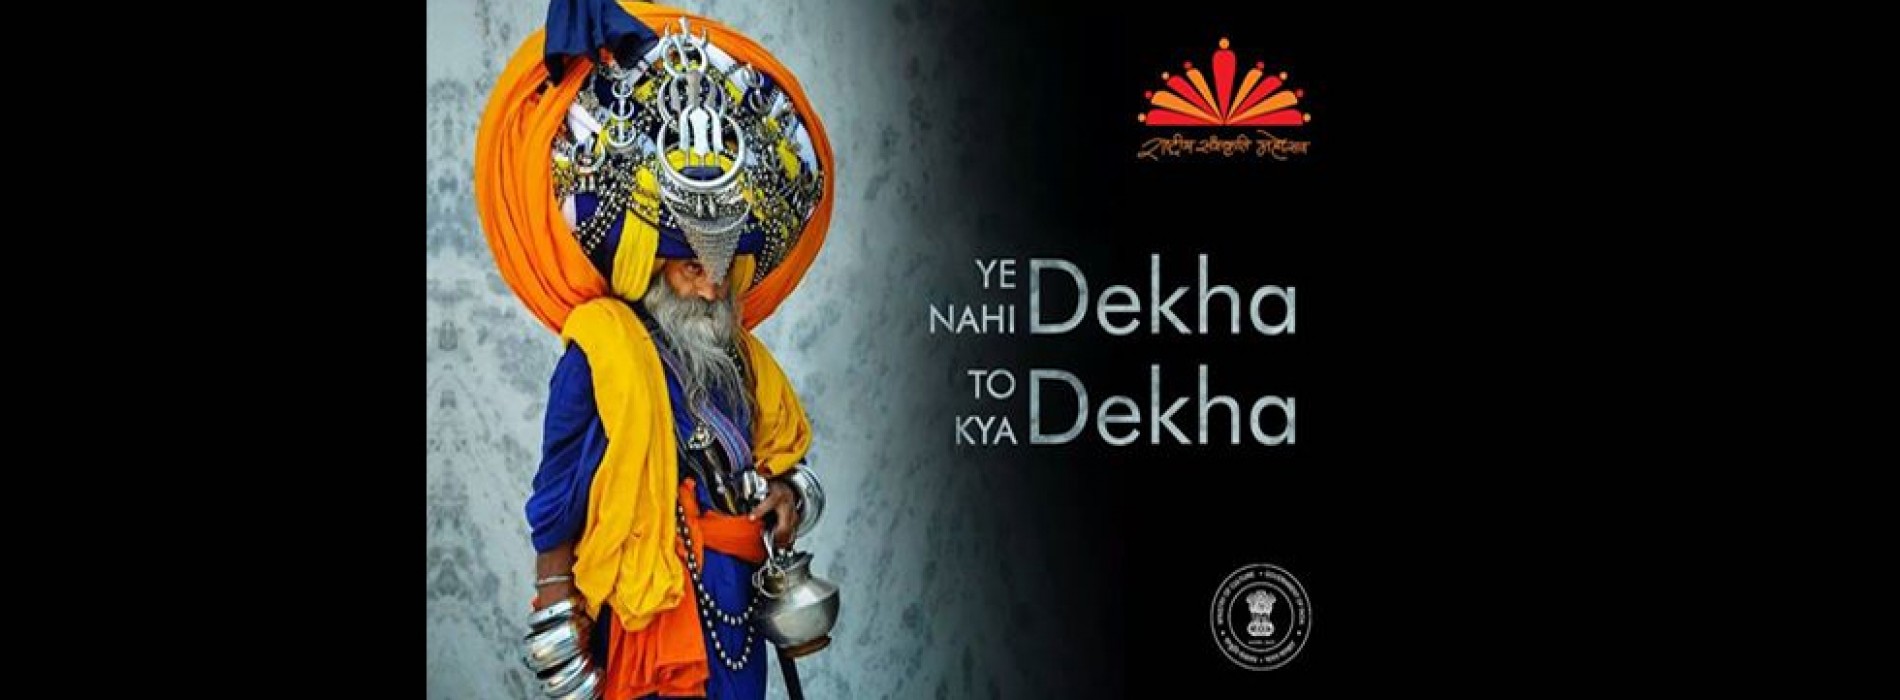 5th Rashtriya Sanskriti Mahotsav being organized in Ne Region from 23rd to 31st March, 2017